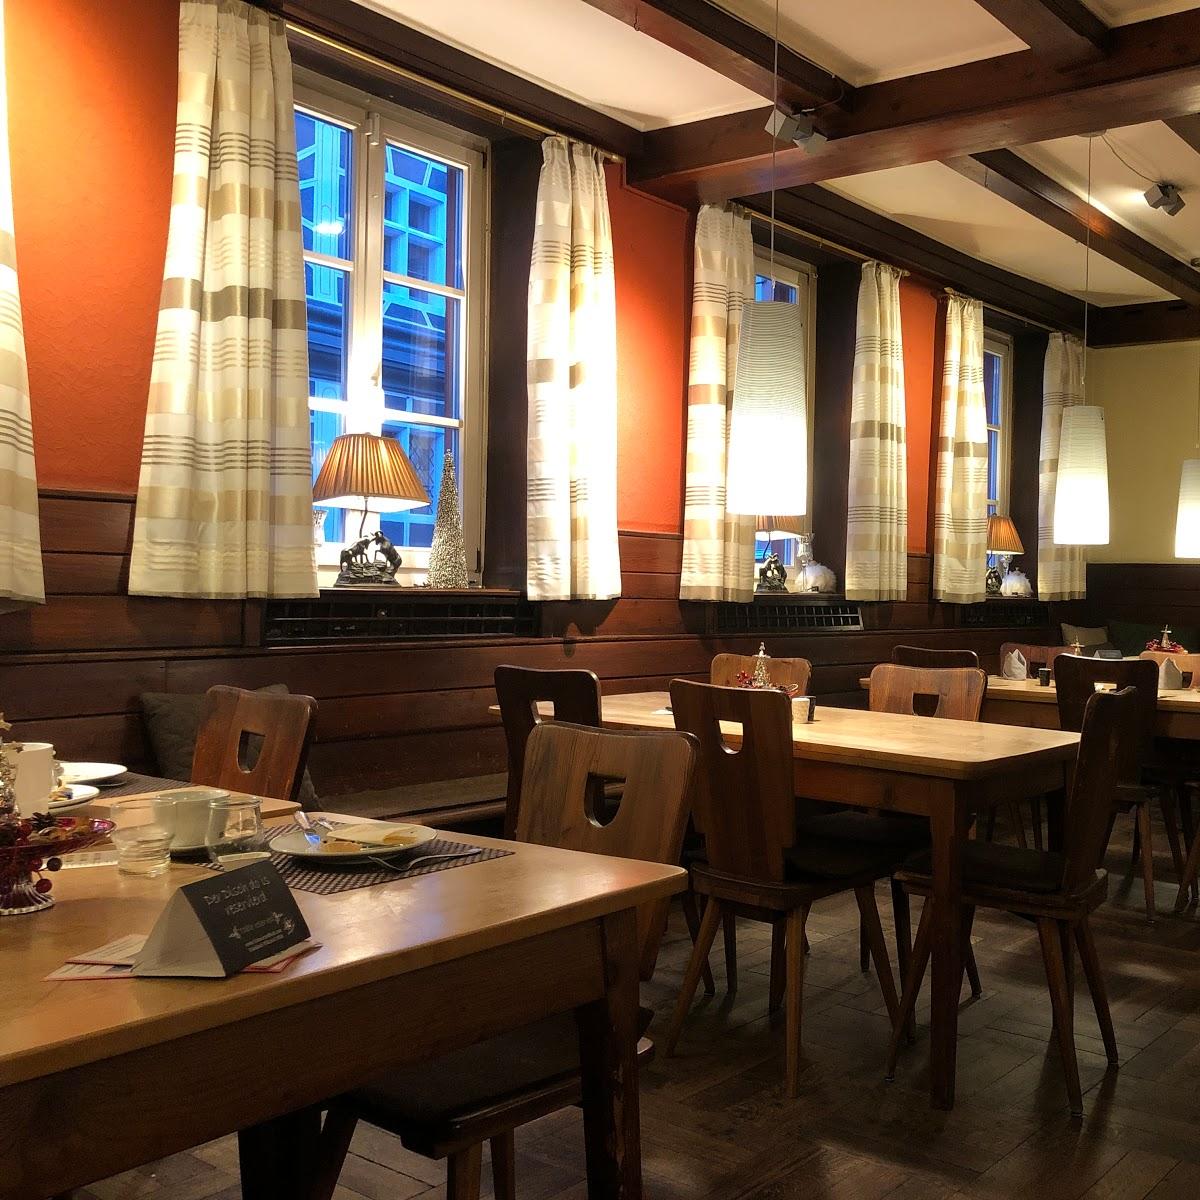 Restaurant "Hotel & Restaurant Schwarzer Bock" in Ansbach